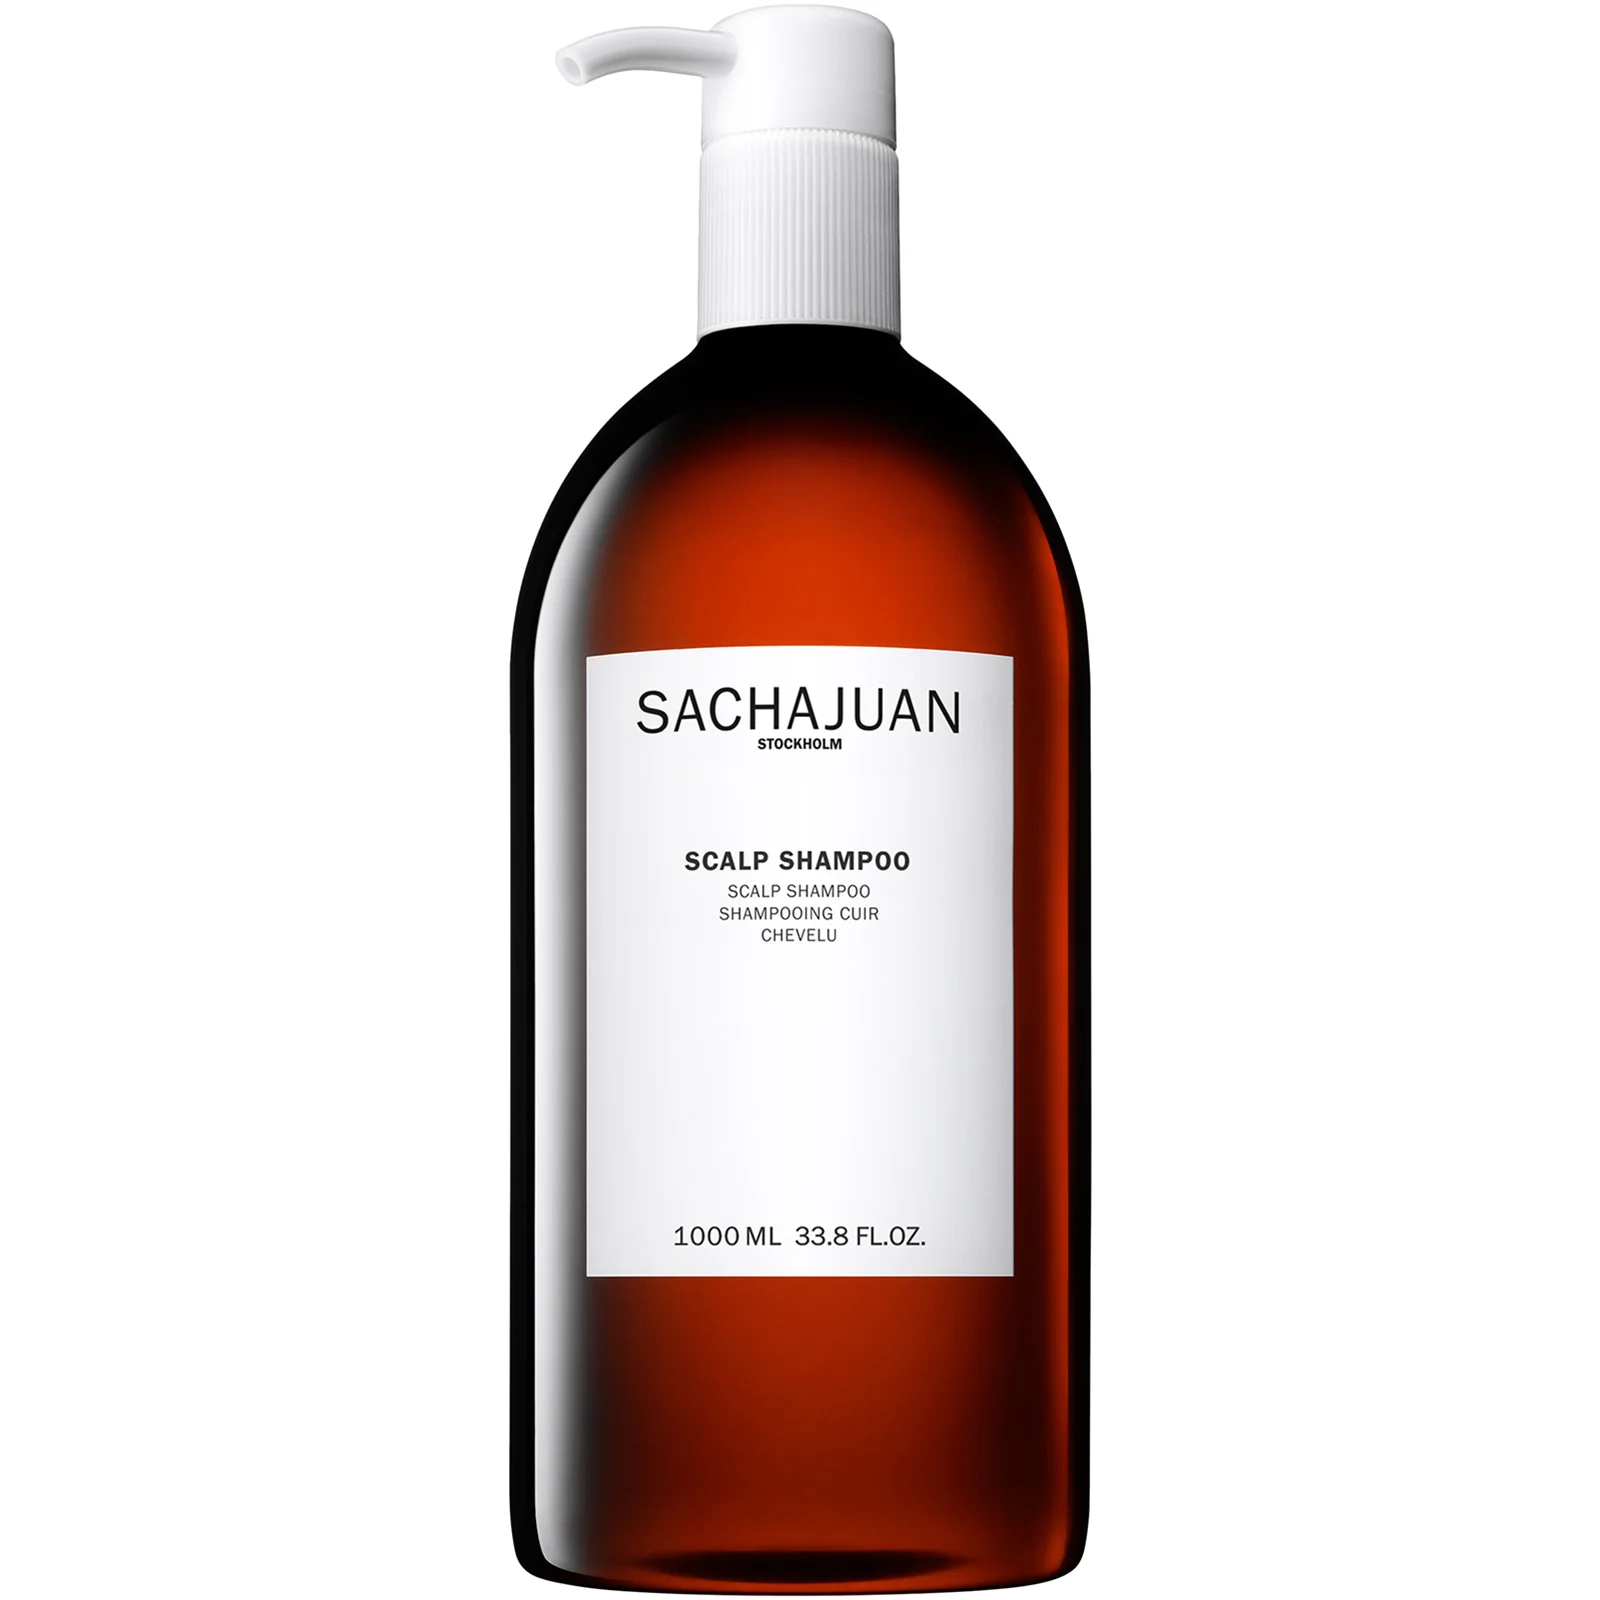 Sachajuan Scalp Shampoo 1000ml Image 1